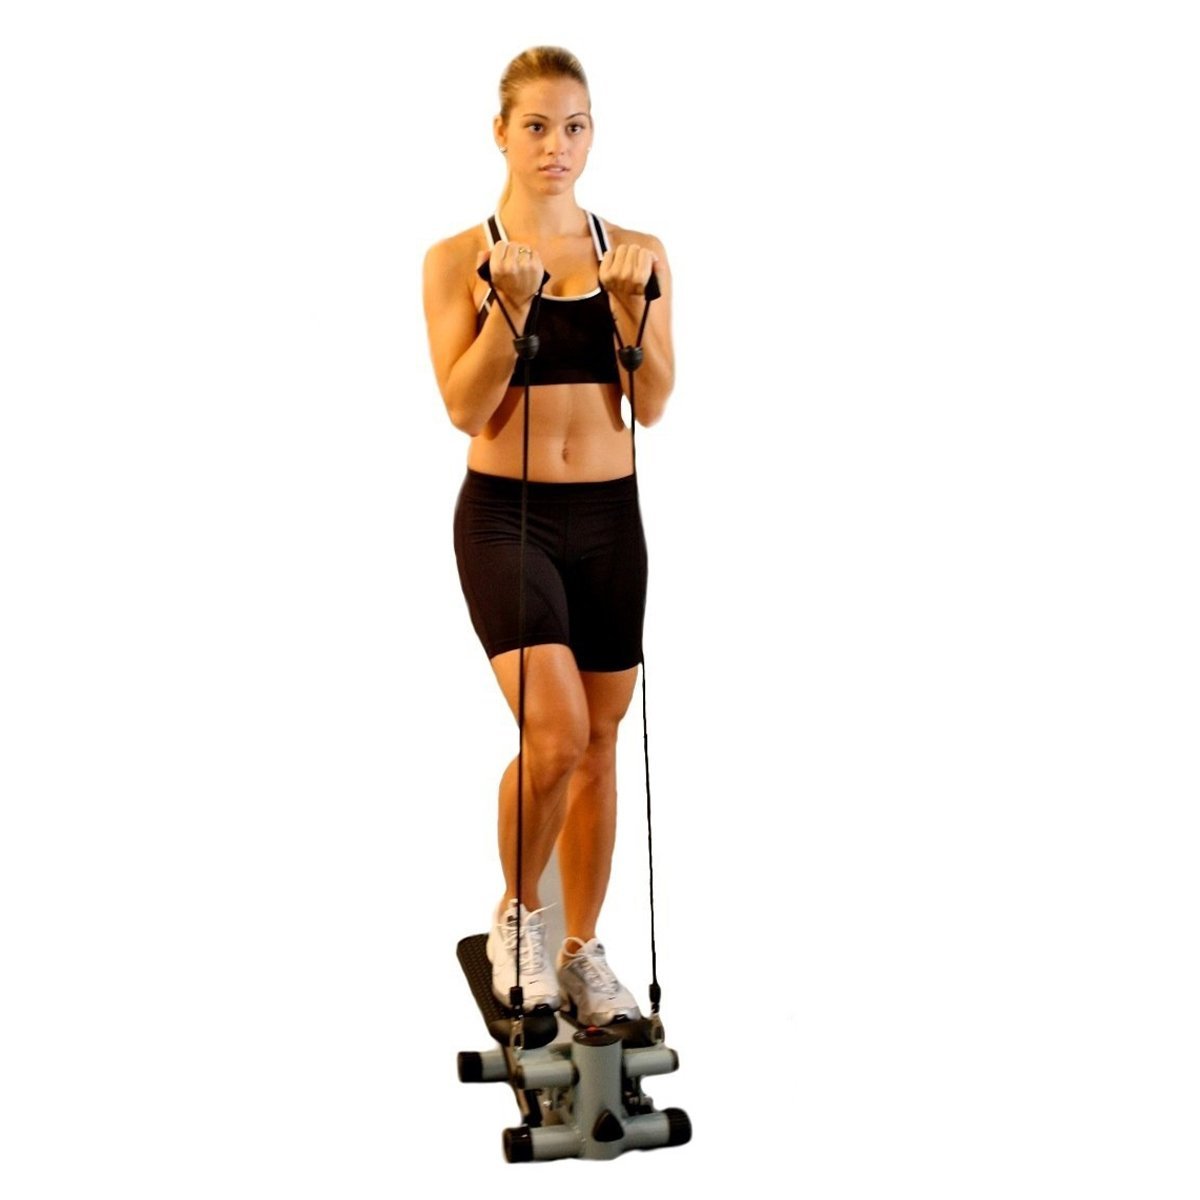 Mini Stepper Simulador Caminhada Fisioterapia Exercicio Perna Gluteo Braço Academia Atividade Fisica - 4